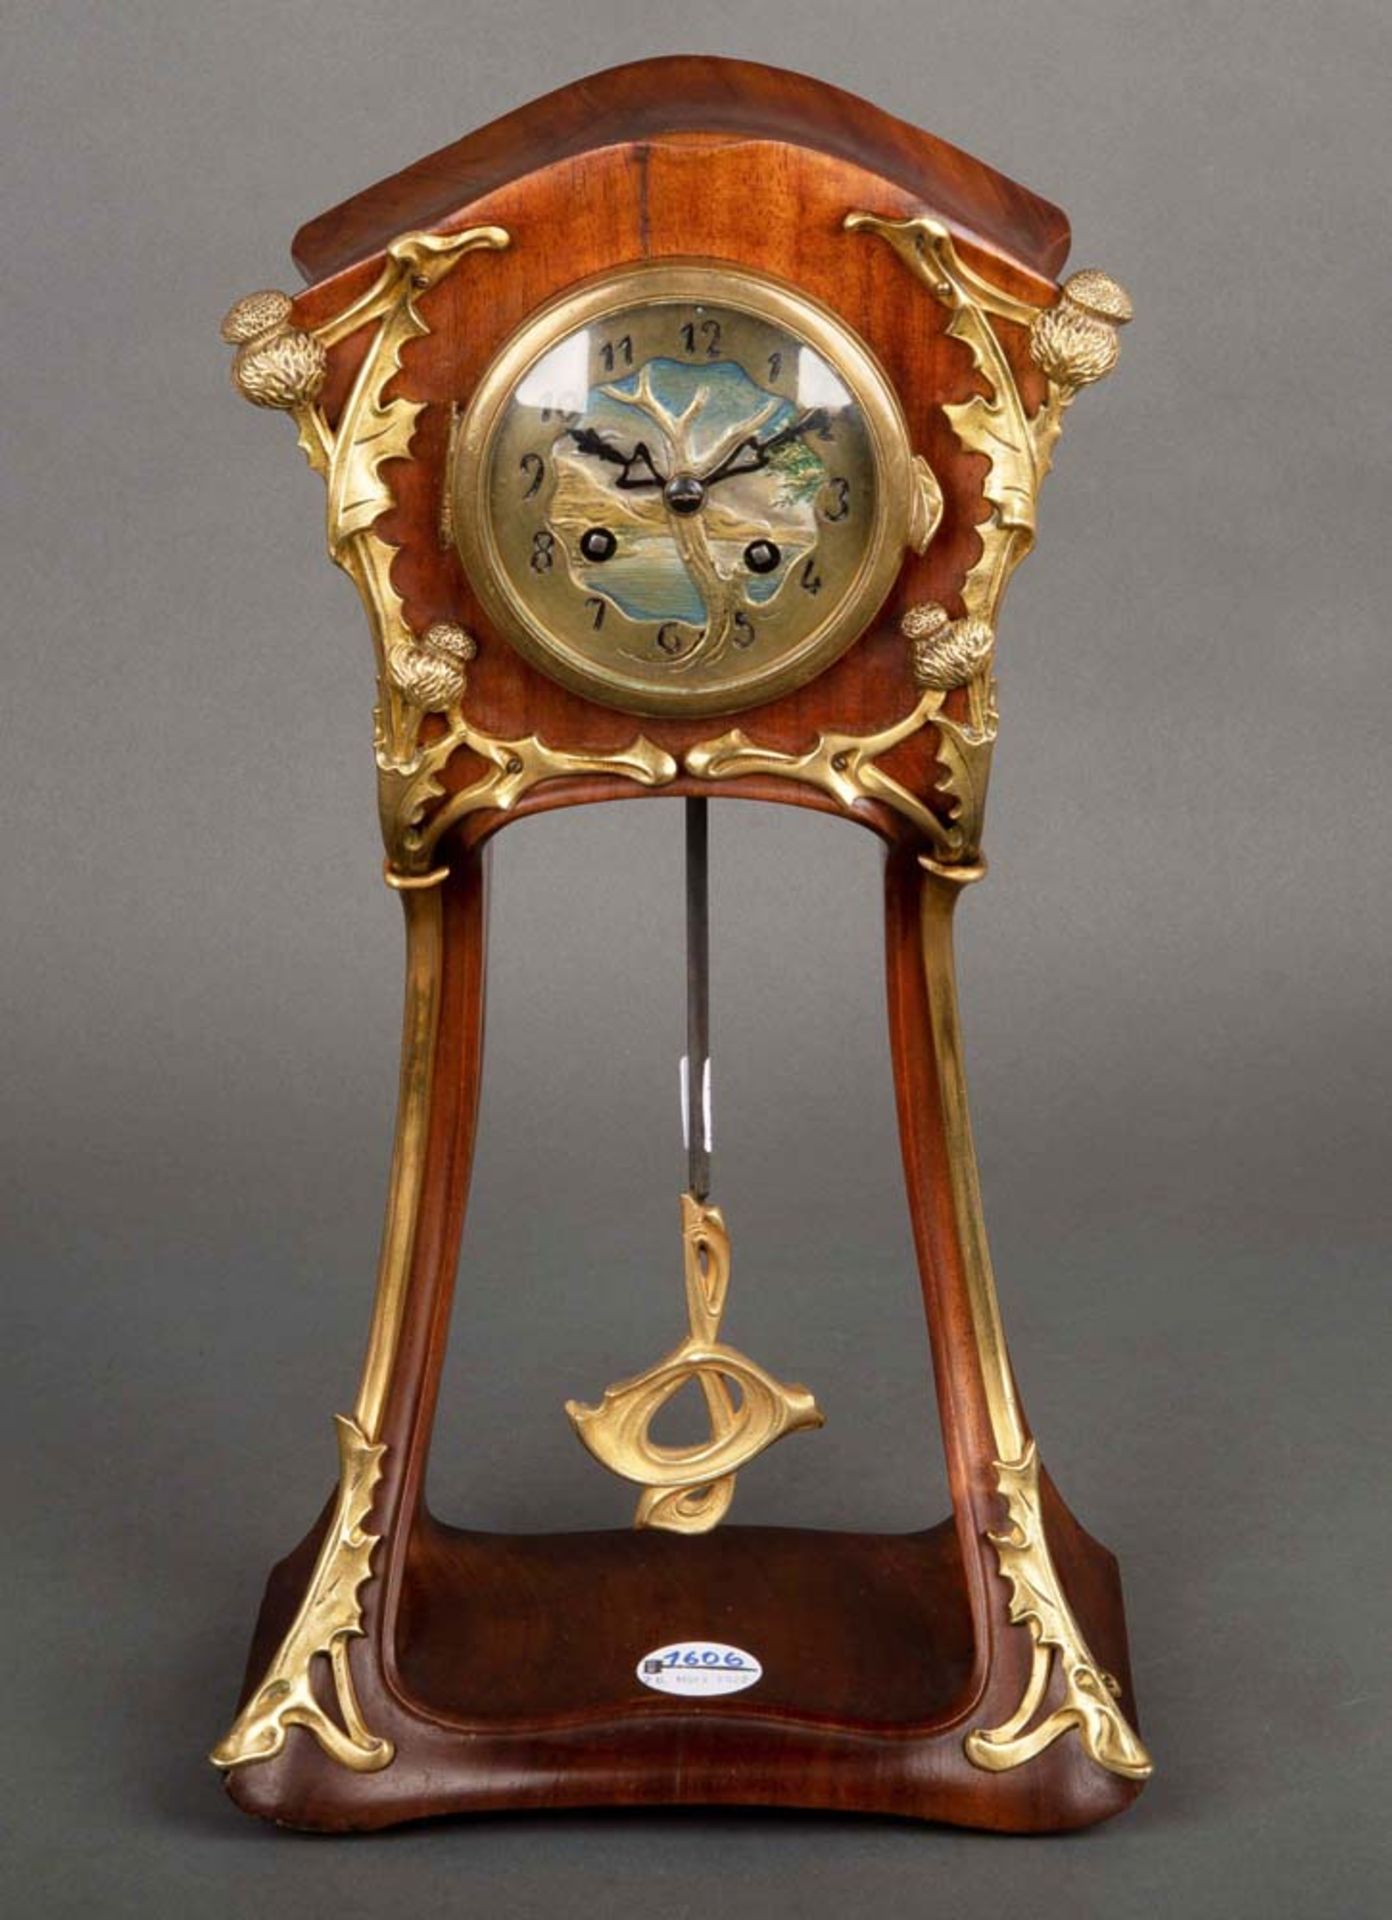 Jugendstil-Uhr. Louis Majorelle, Nancy um 1900. Mahagoni, elegant geschweift. Reich appleziert mit